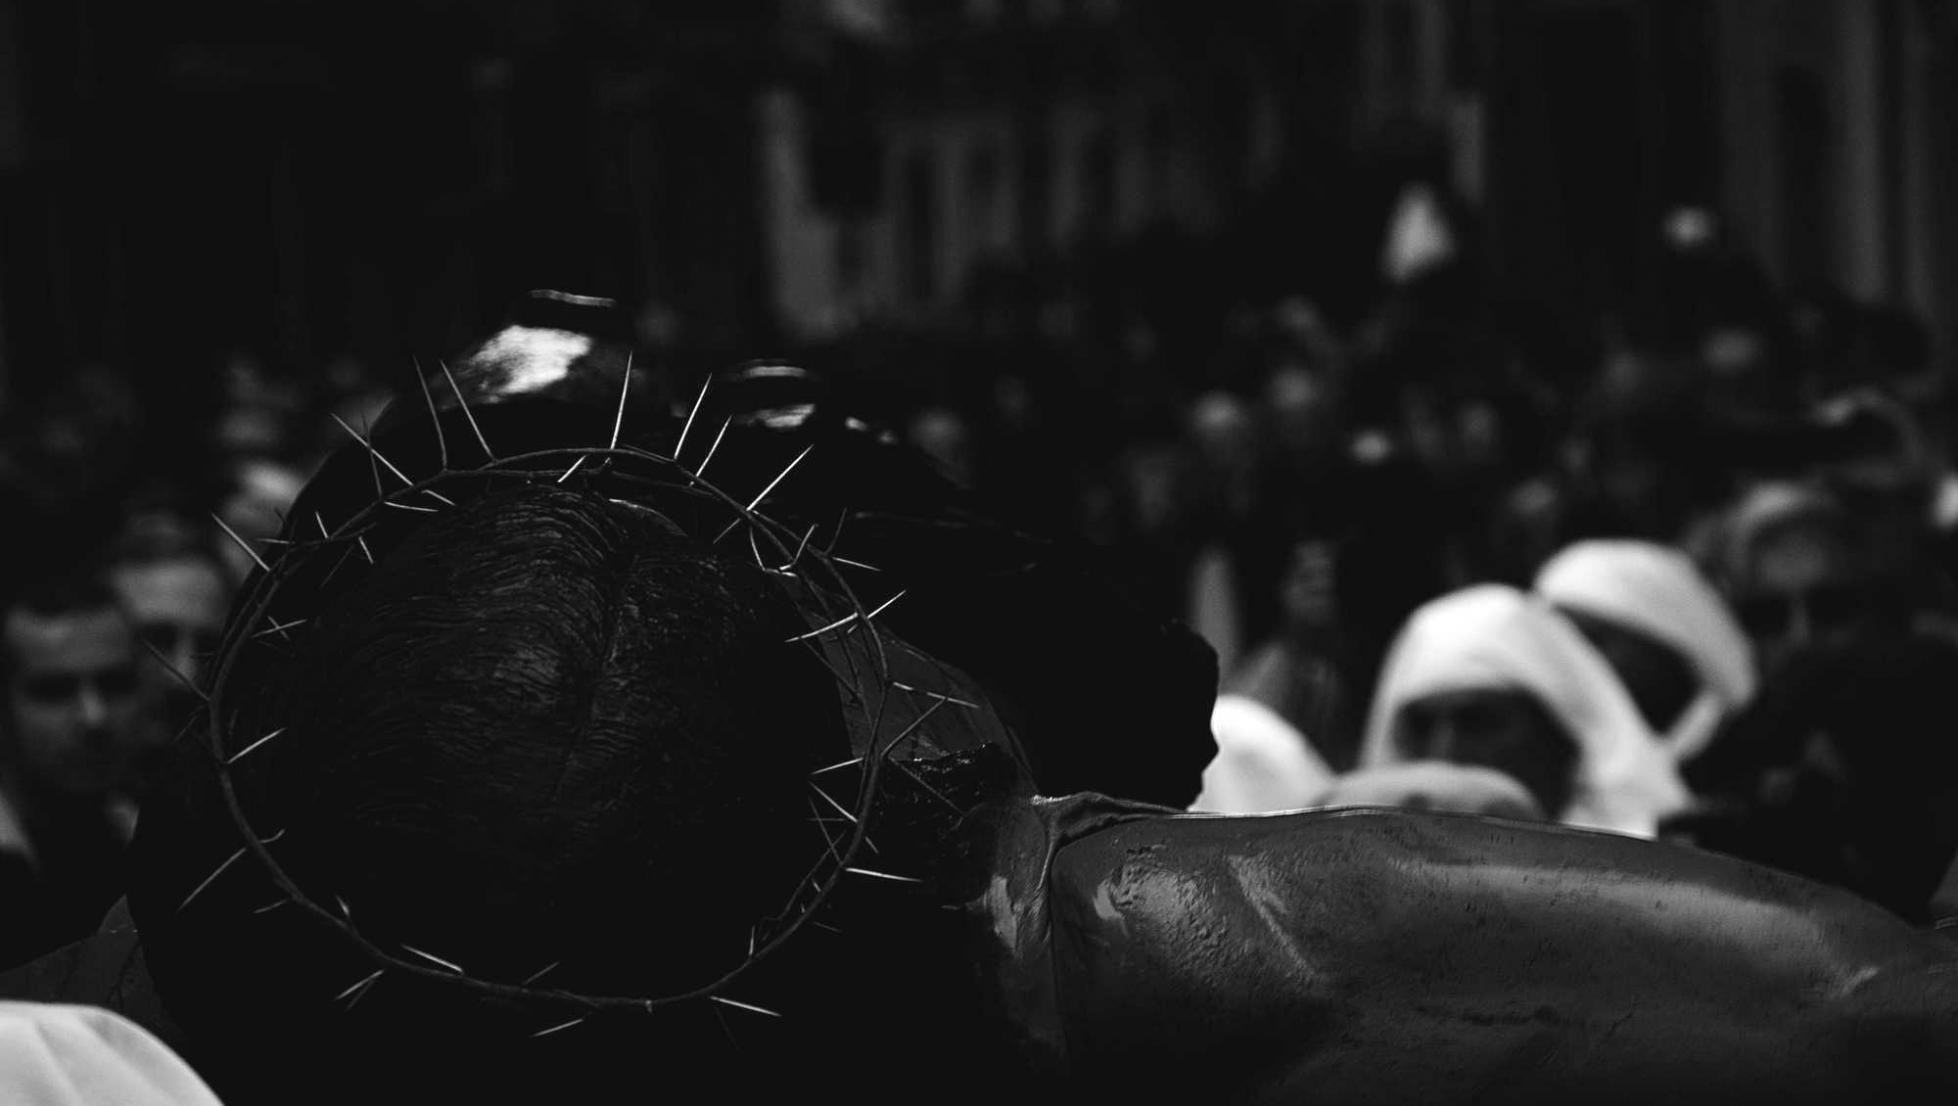 Cristo in processione - Cagliari